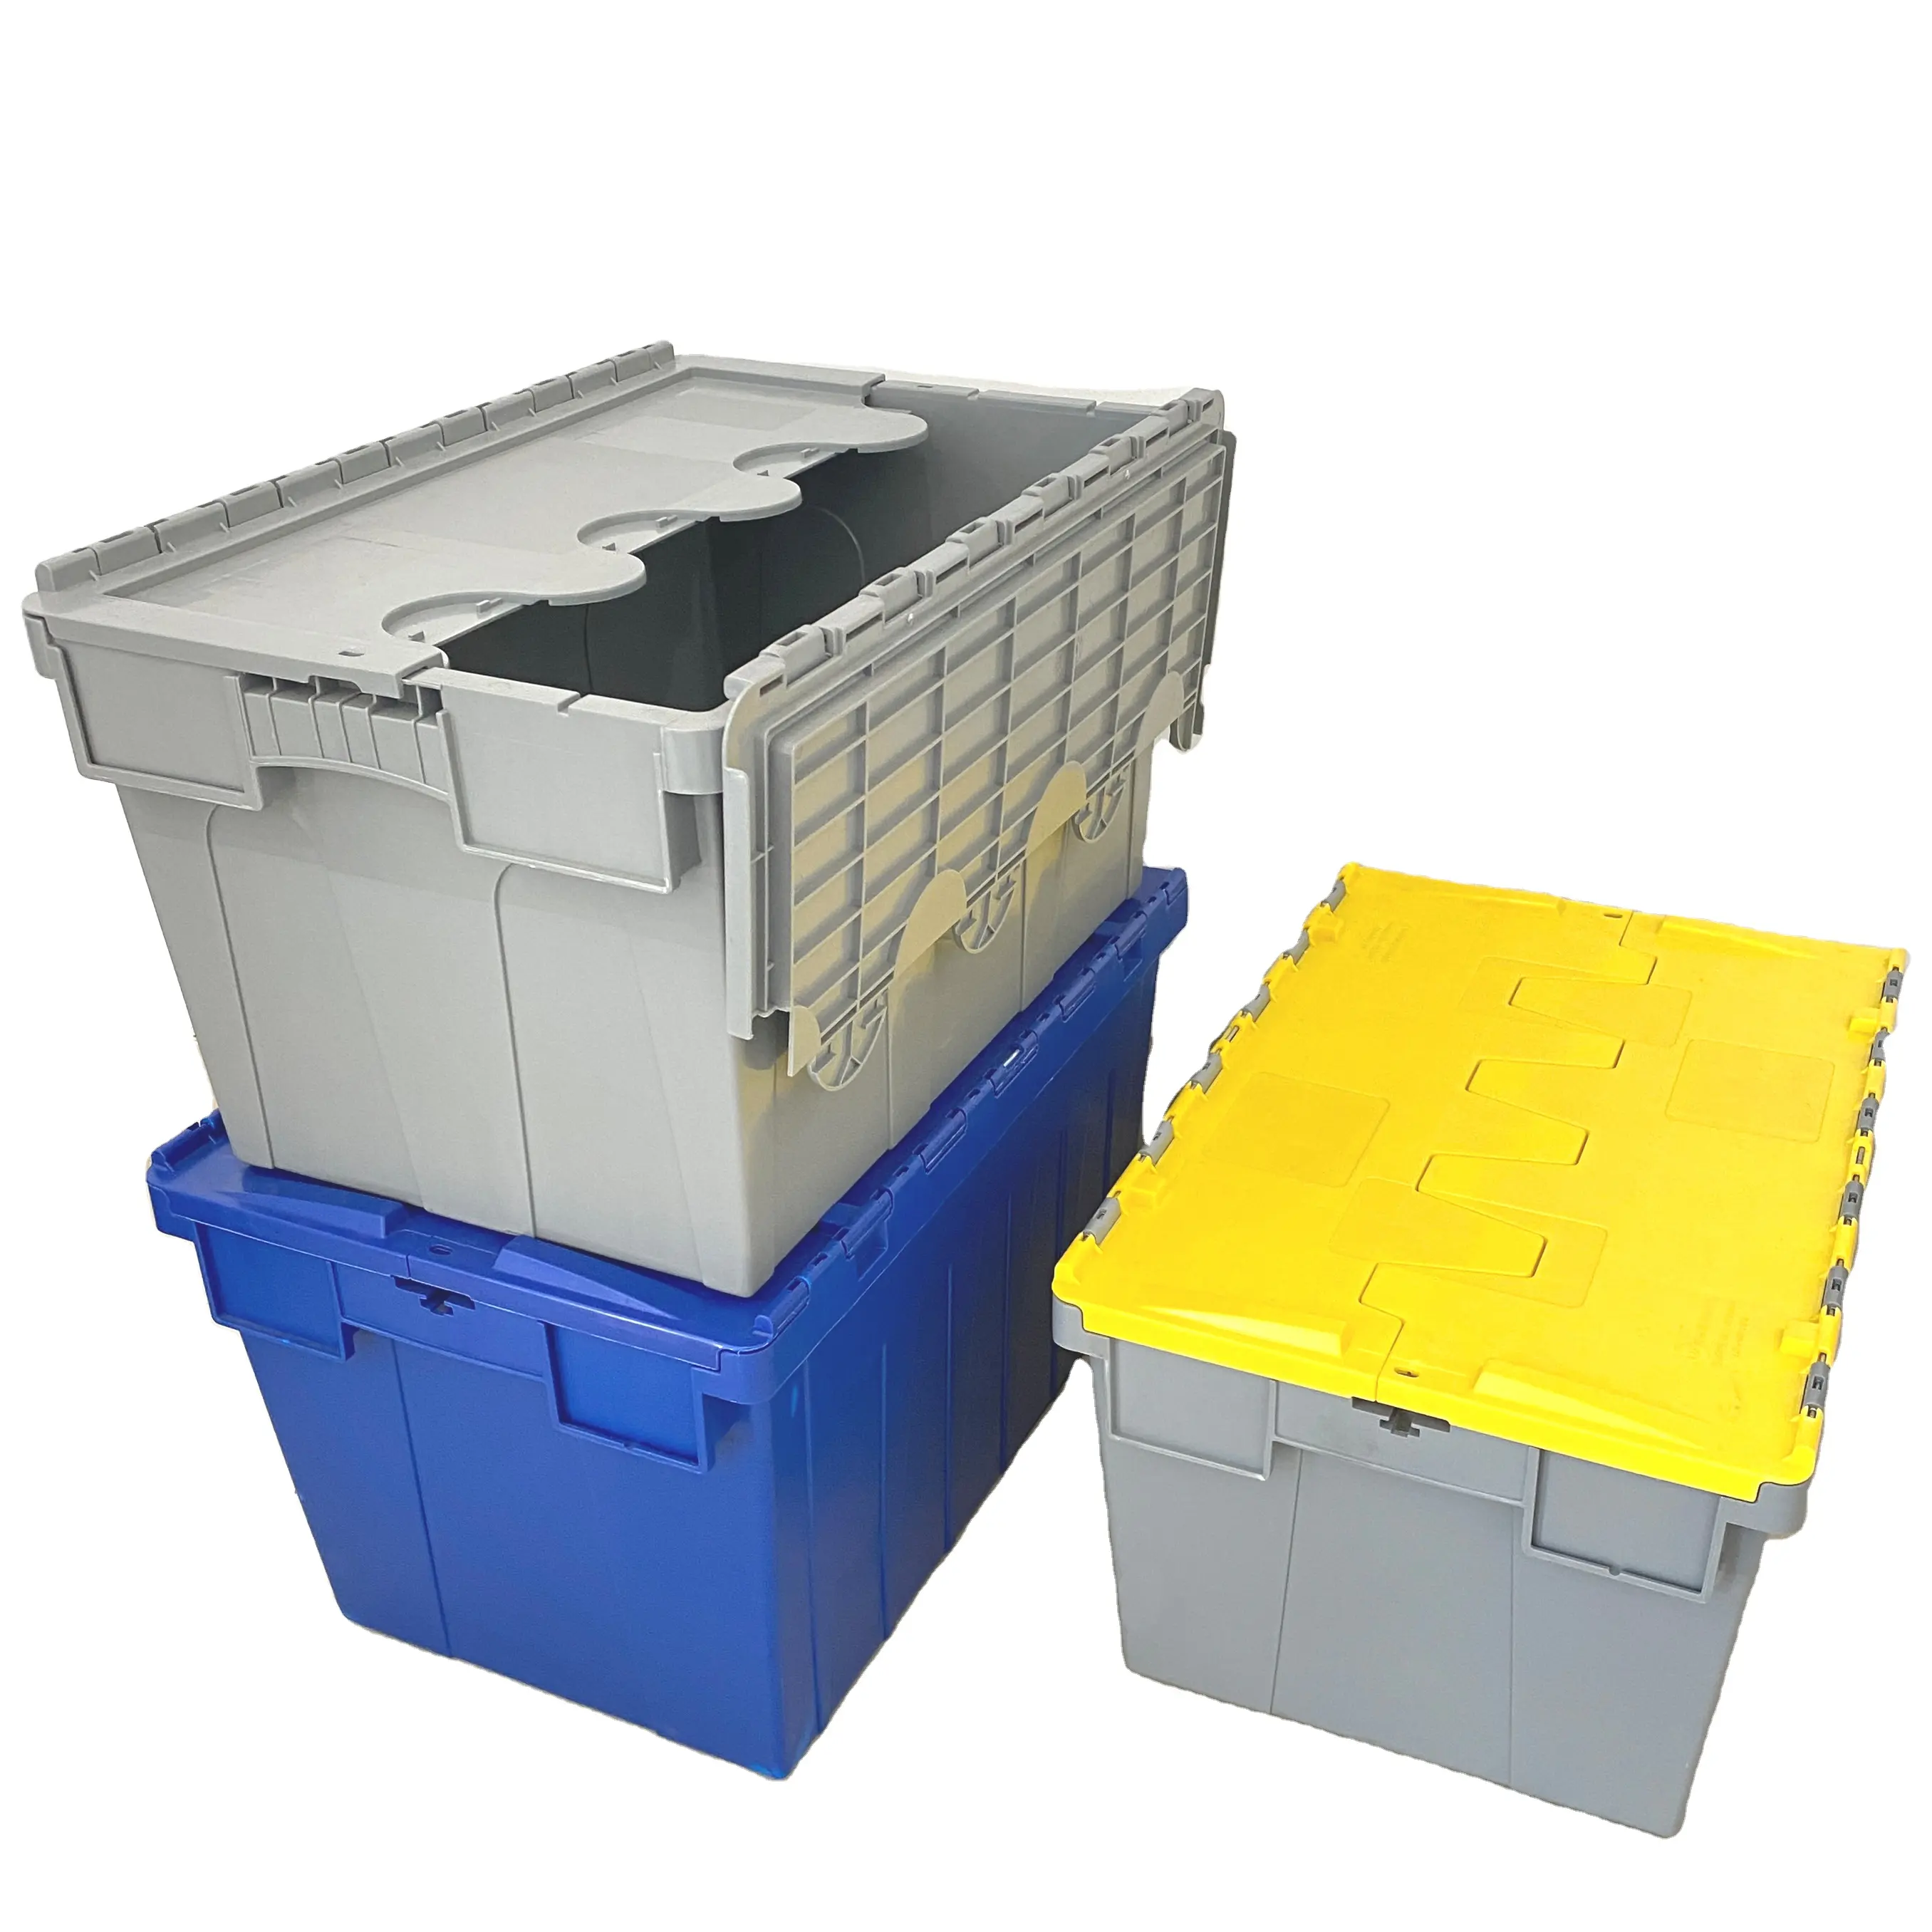 Casse mobili nidificabili in plastica per impieghi gravosi contenitori impilabili con coperchio attaccato contenitori in plastica con coperchi